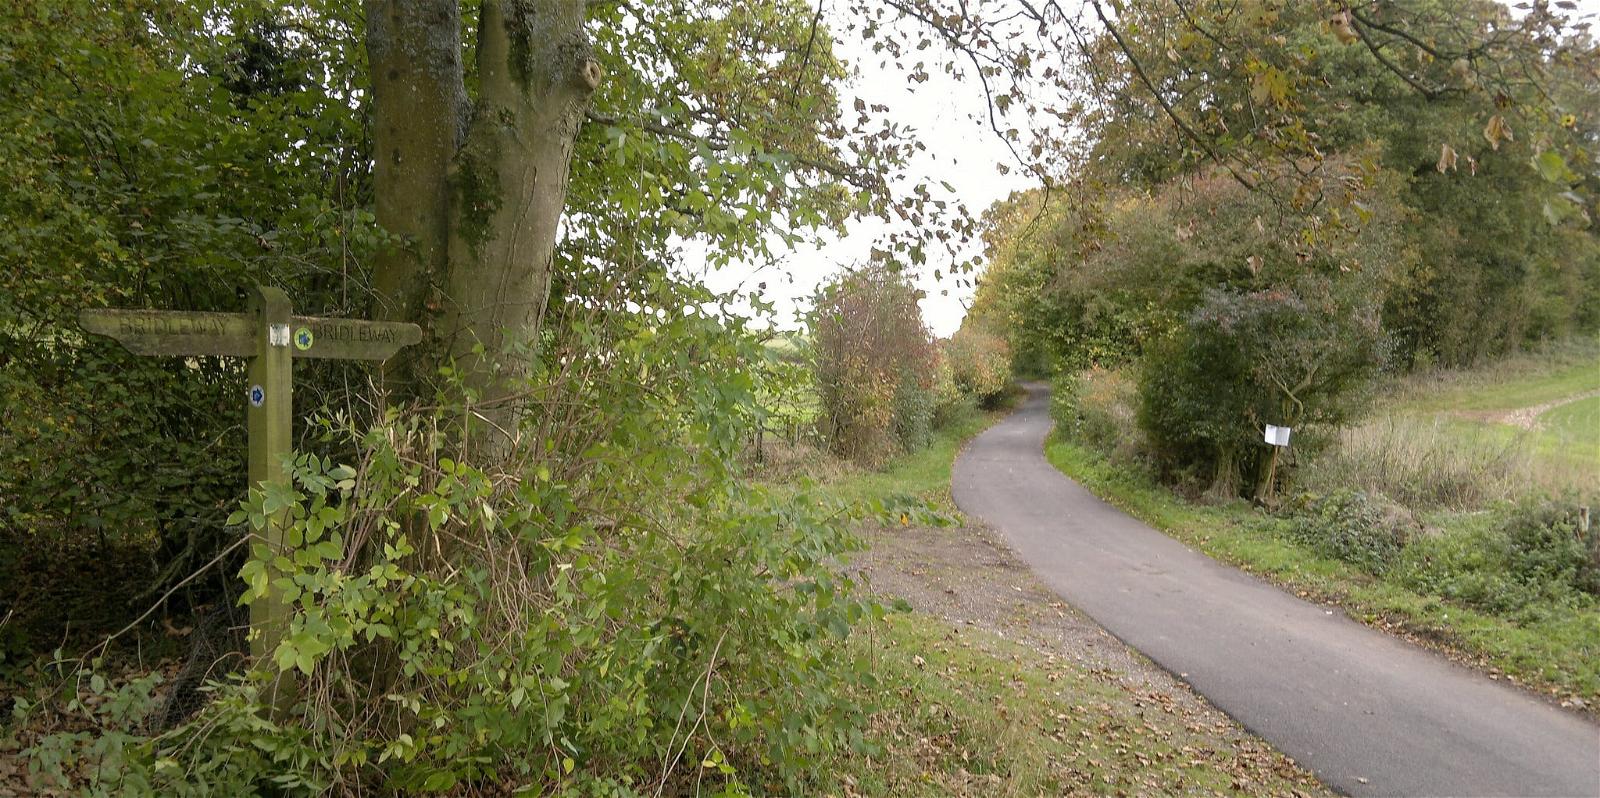 Εικόνα από Portway. uk england sign hampshire bridleway hants publicbridleway cyclingdiscoveries mapmyride:route=1043529039